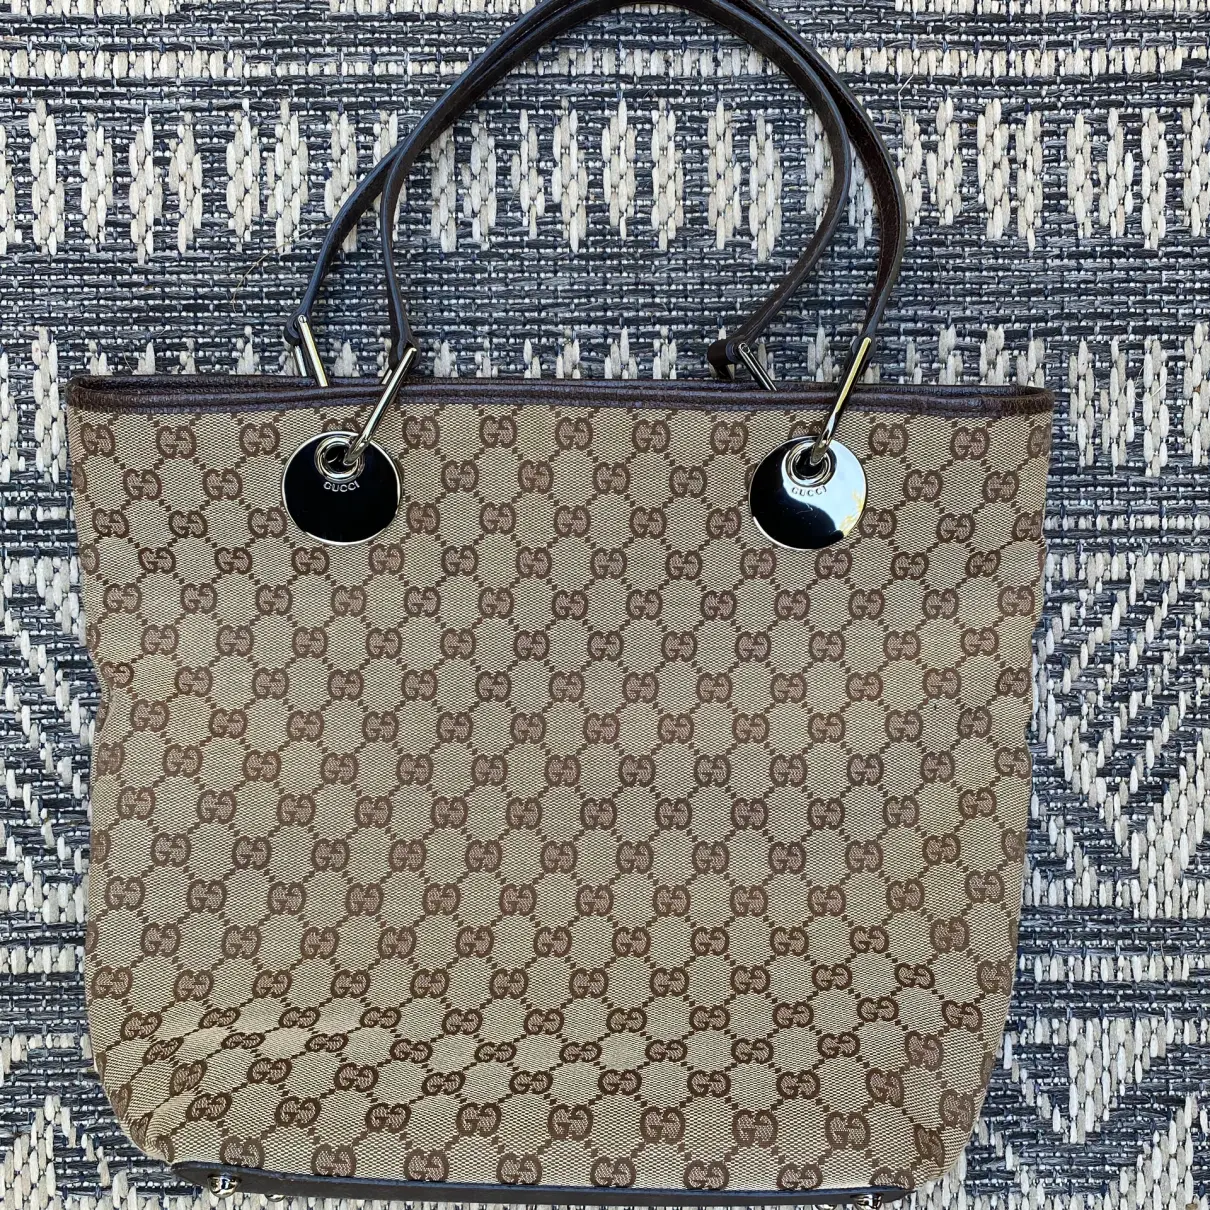 Eclipse cloth handbag Gucci